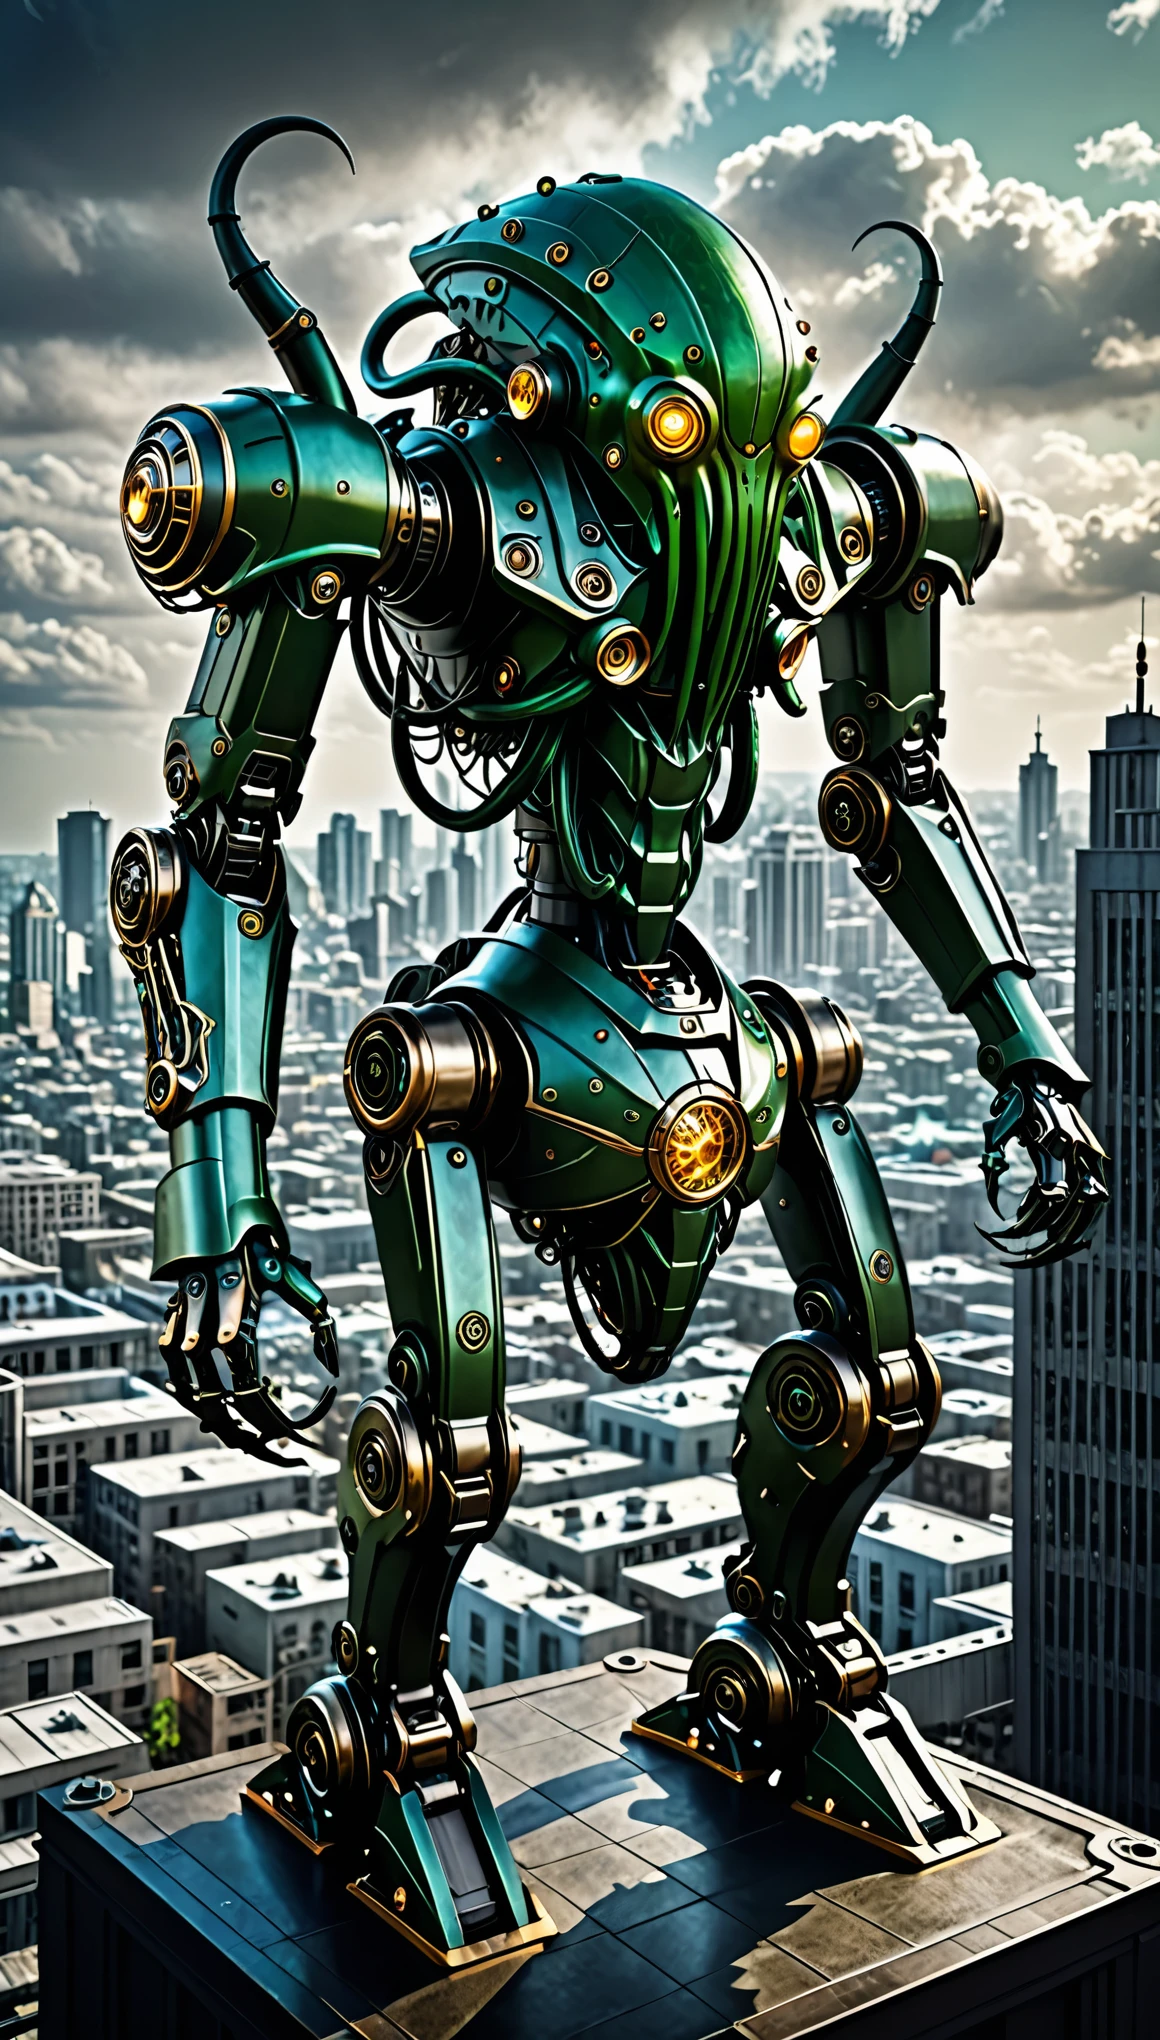 meilleure qualité, super bien, 16k, extrêmement détaillé, 2.5D, délicat et dynamique, robot mécanique Cthulhu mécanique androïde, regarder la ville d&#39;en haut, Prêt à attaquer, effet de fantaisie sombre